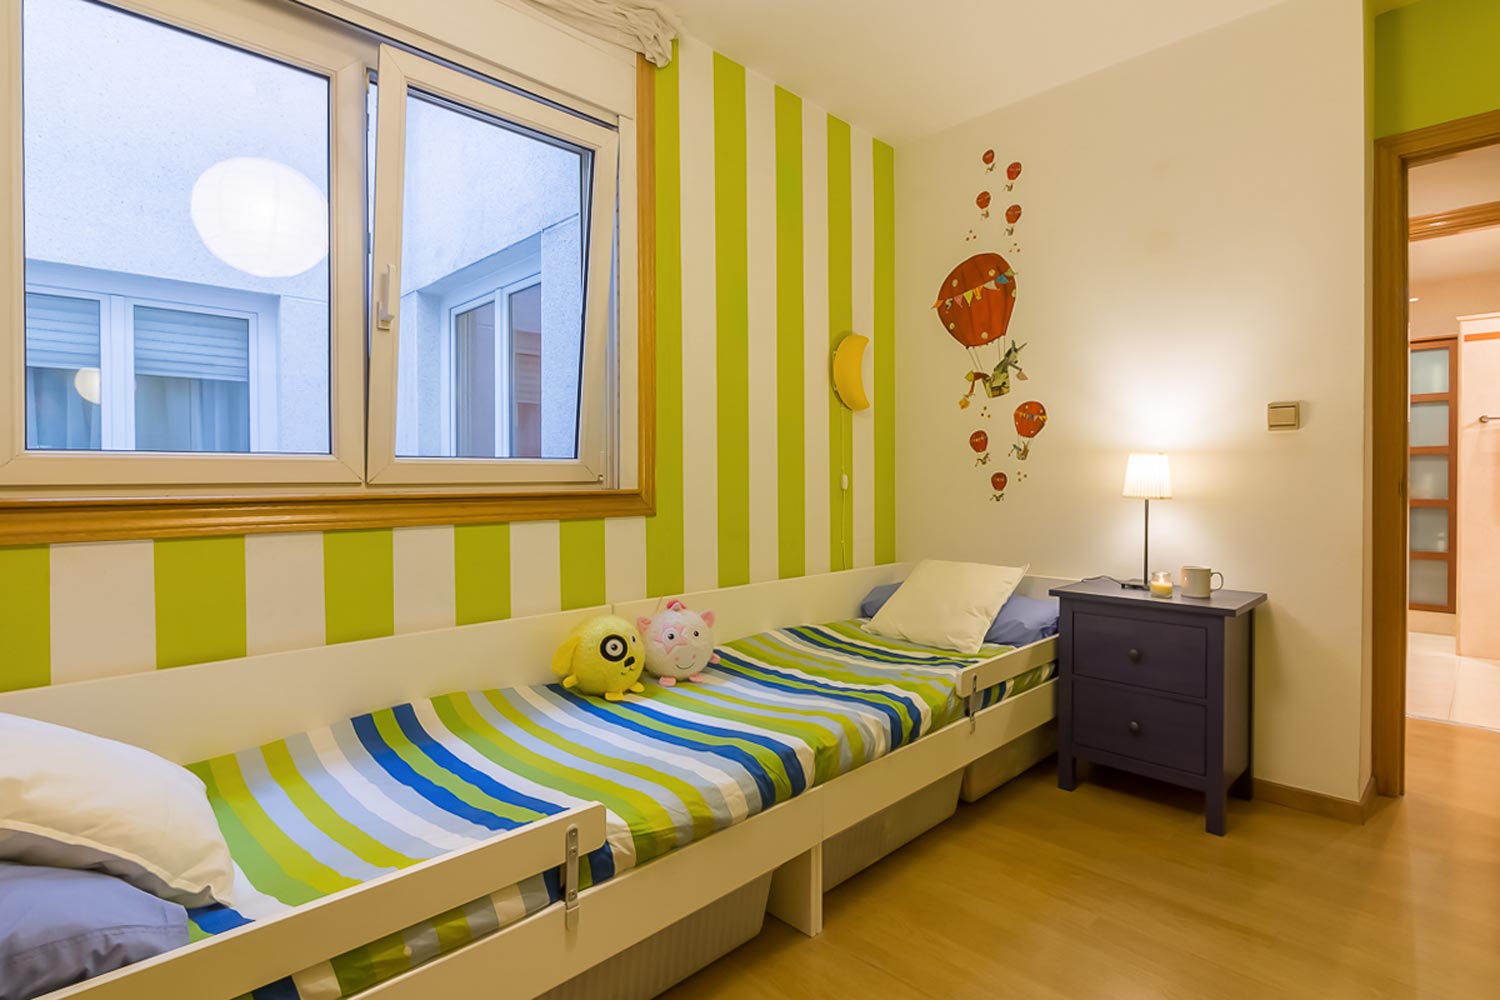 Dormitorio juvenil en tonos verdes y azules_ Camas alineadas bajo ventana oscilobatiente a patio interior